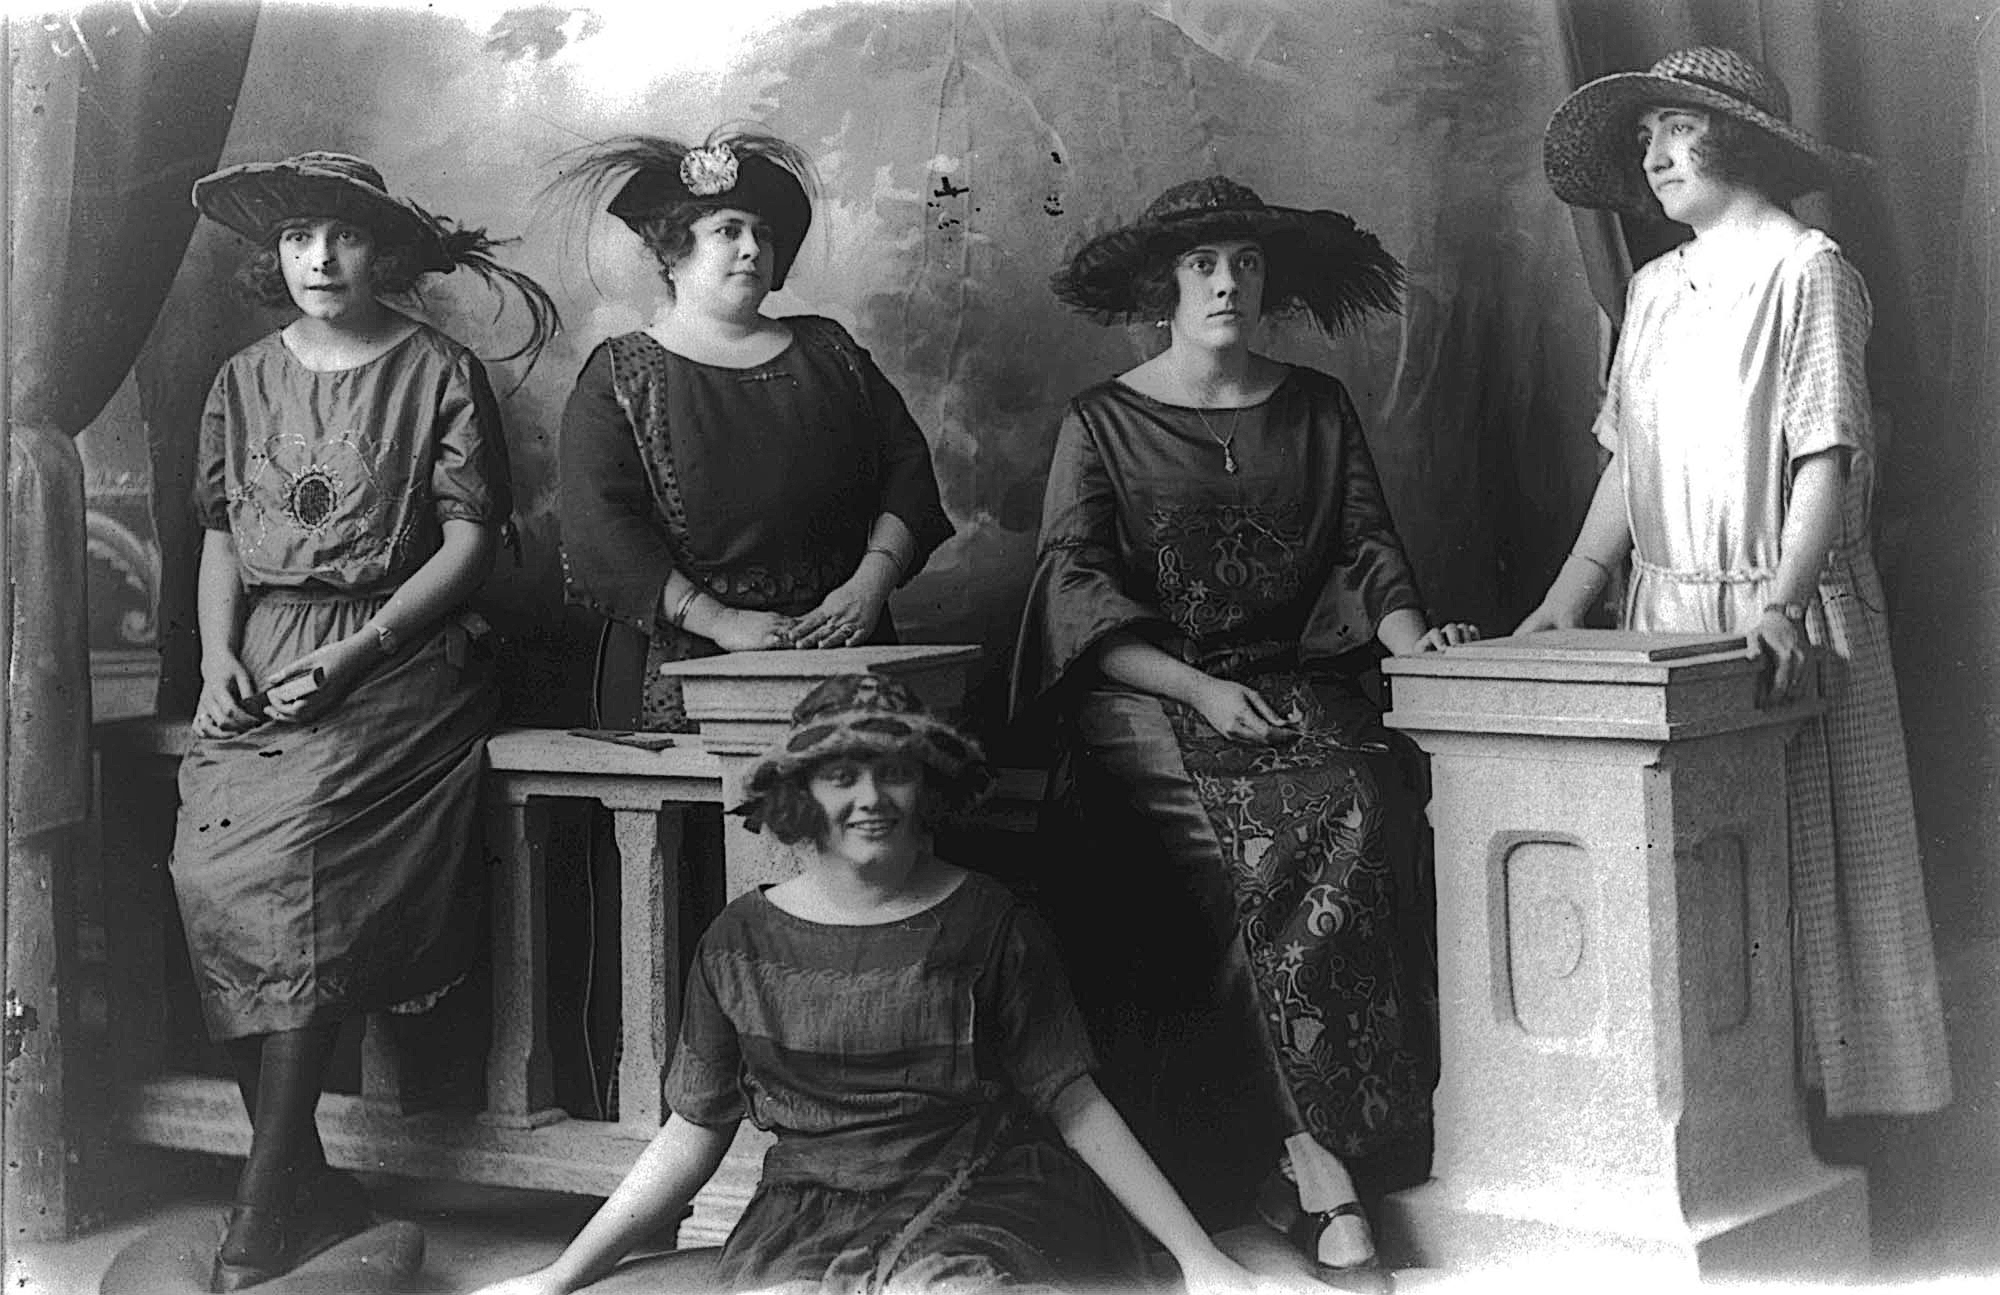 Autore sconosciuto, Ritratto in studio a gruppo di signore dell’alta borghesia dell’Avana, 1905 circa.